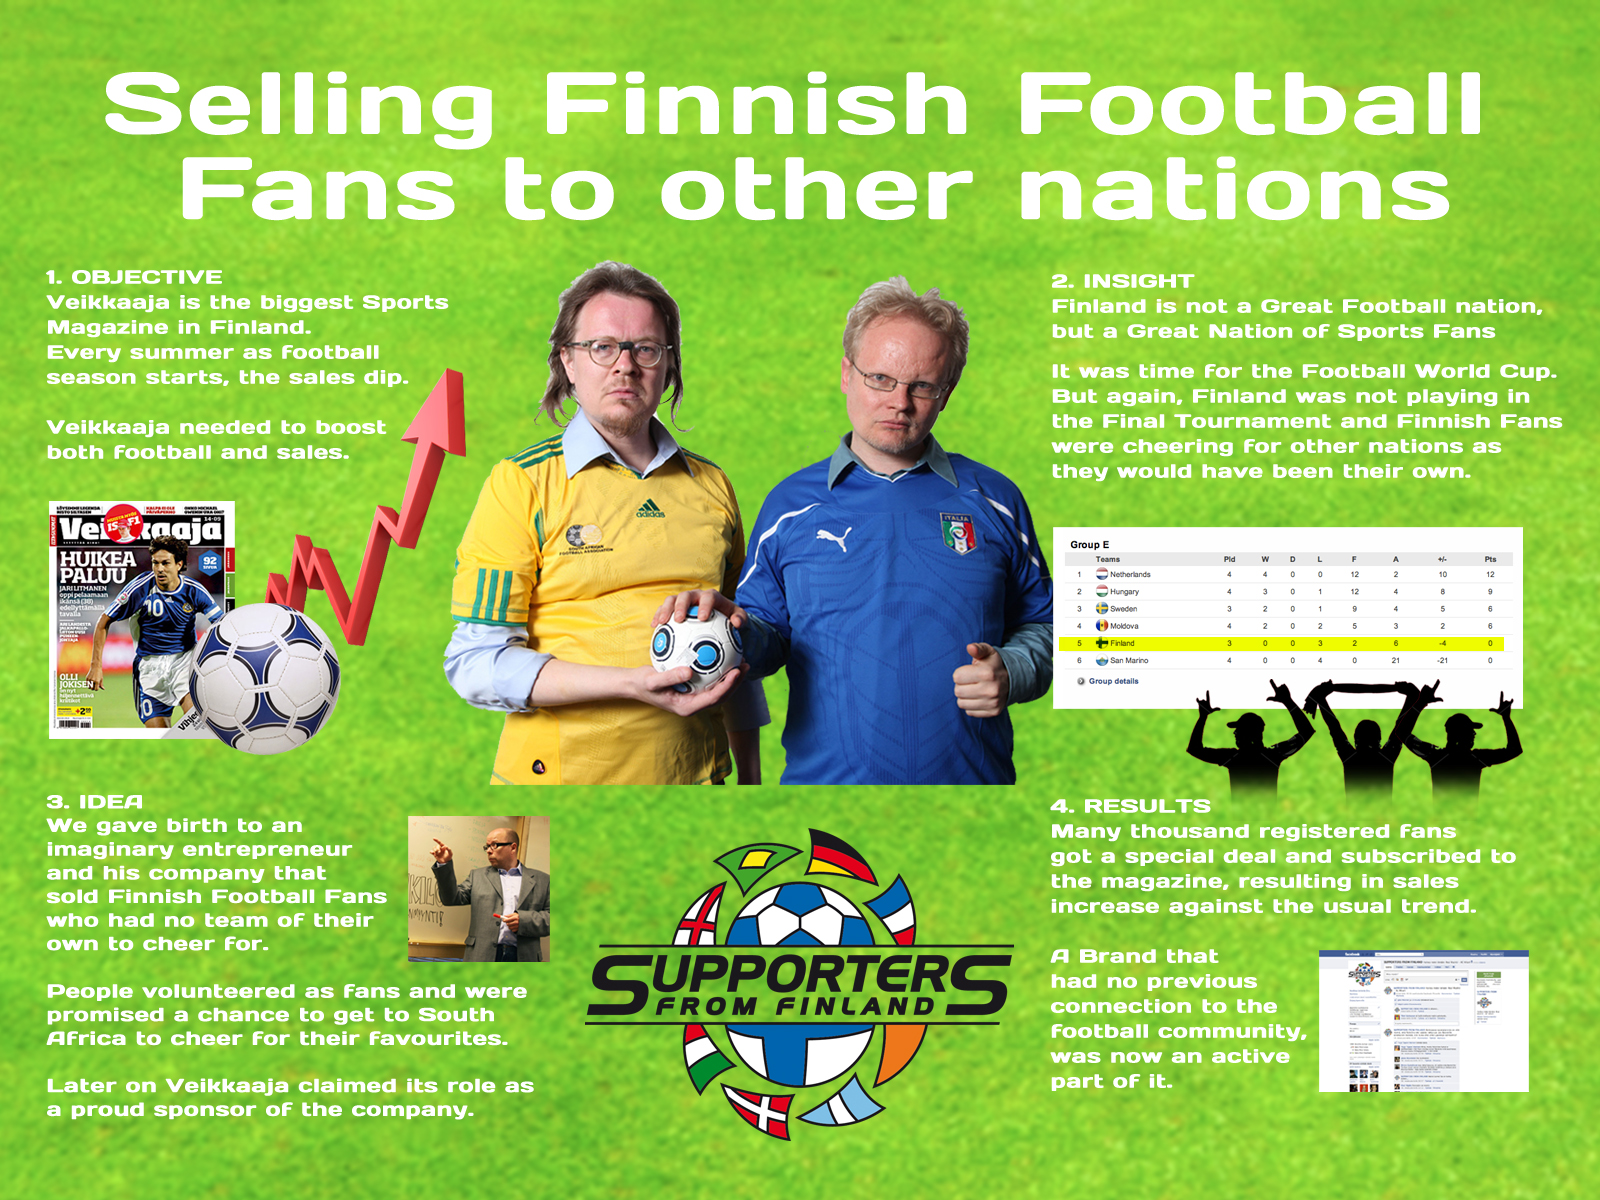 VEIKKAAJA SPORTS MAGAZINE: SUPPORTERS FROM FINLAND